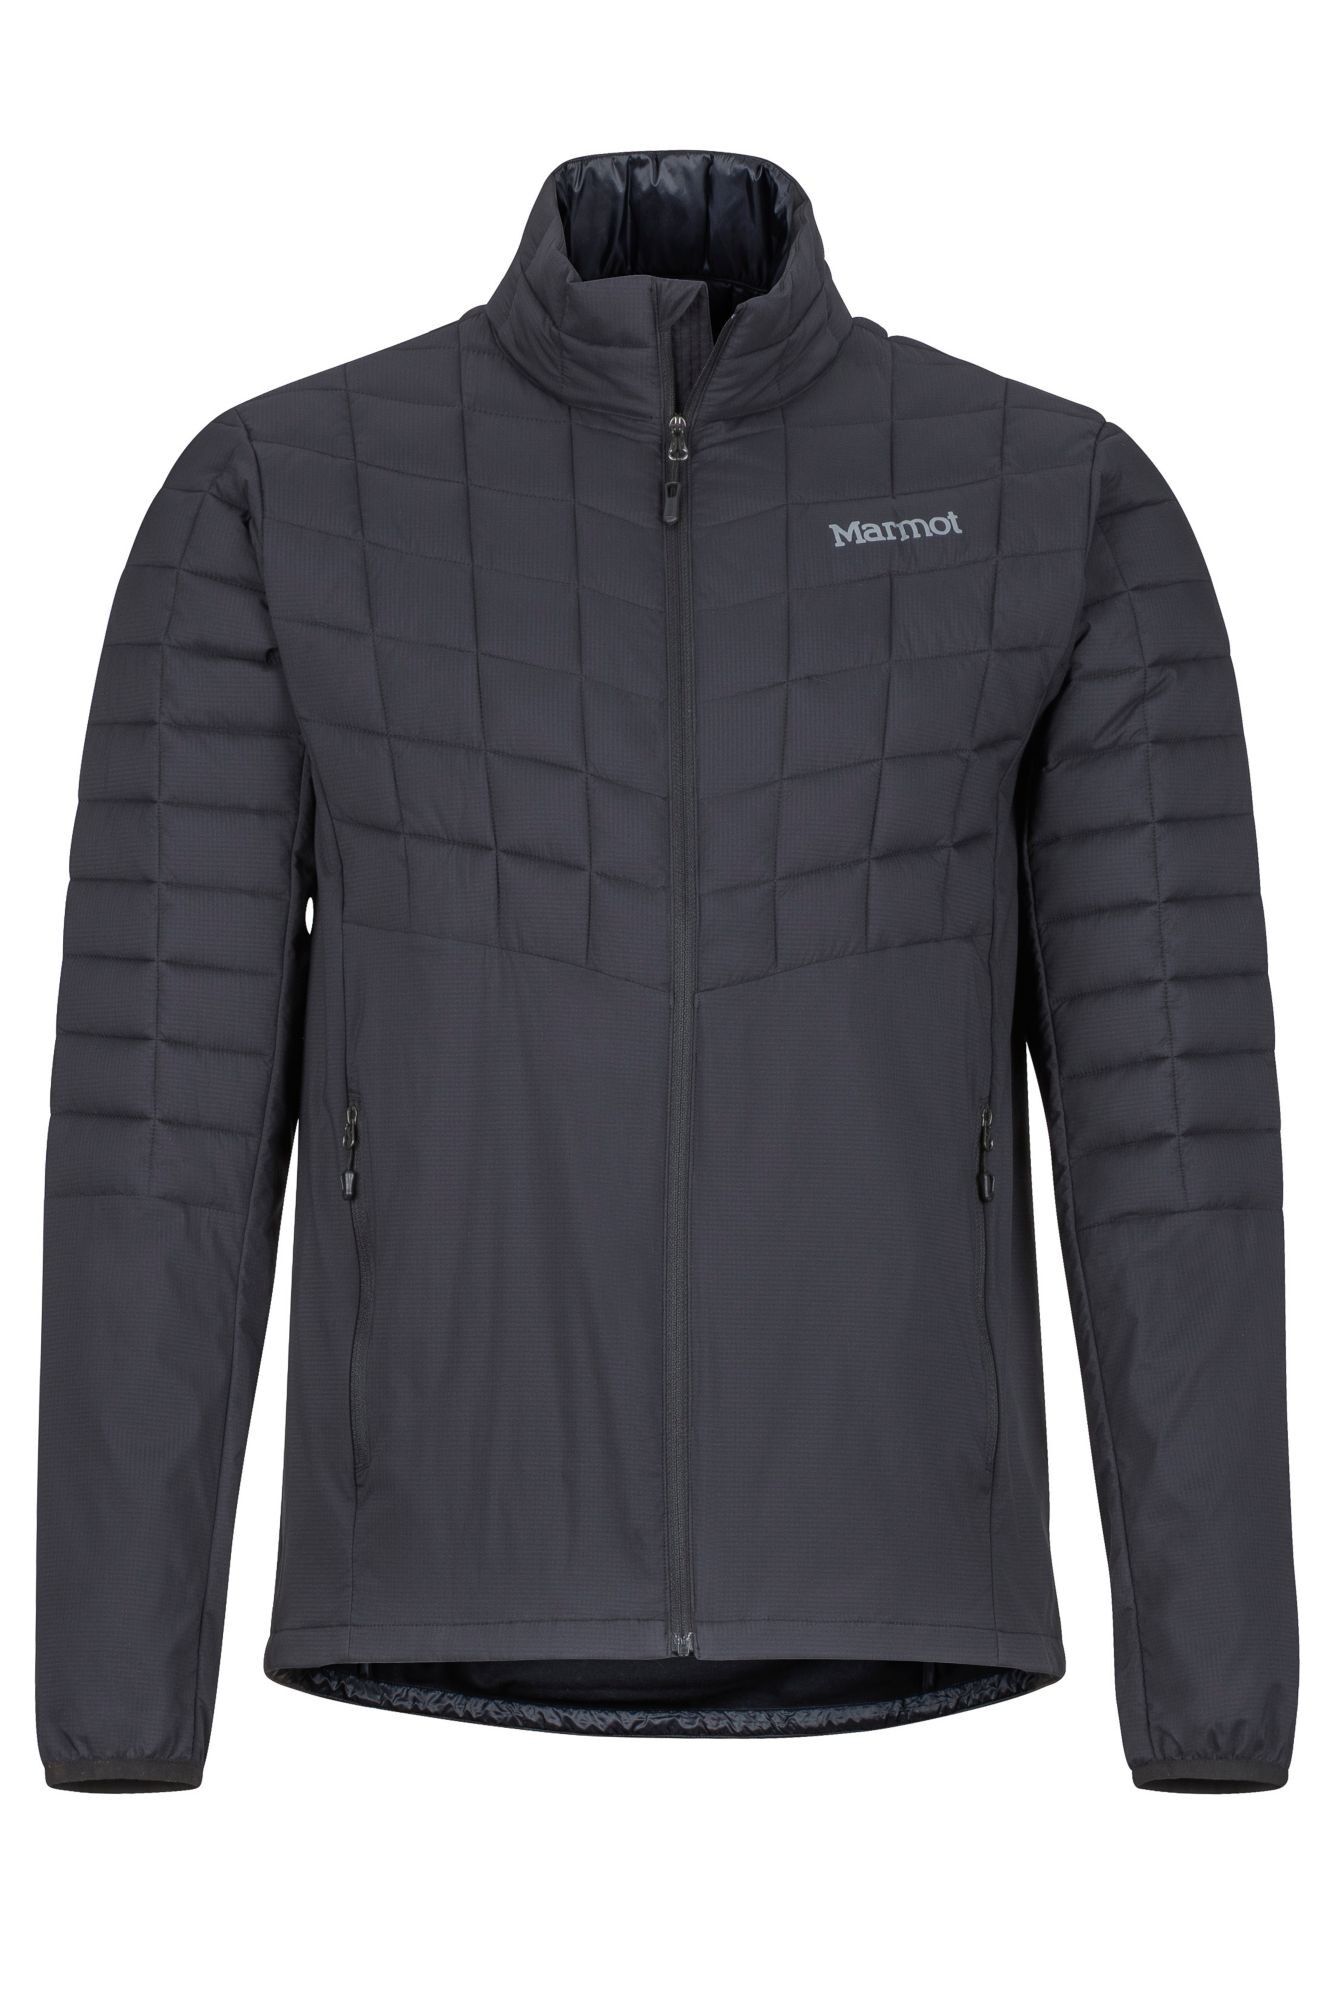 Marmot Featherless Hybrid Jacket - Down jacket - Men's